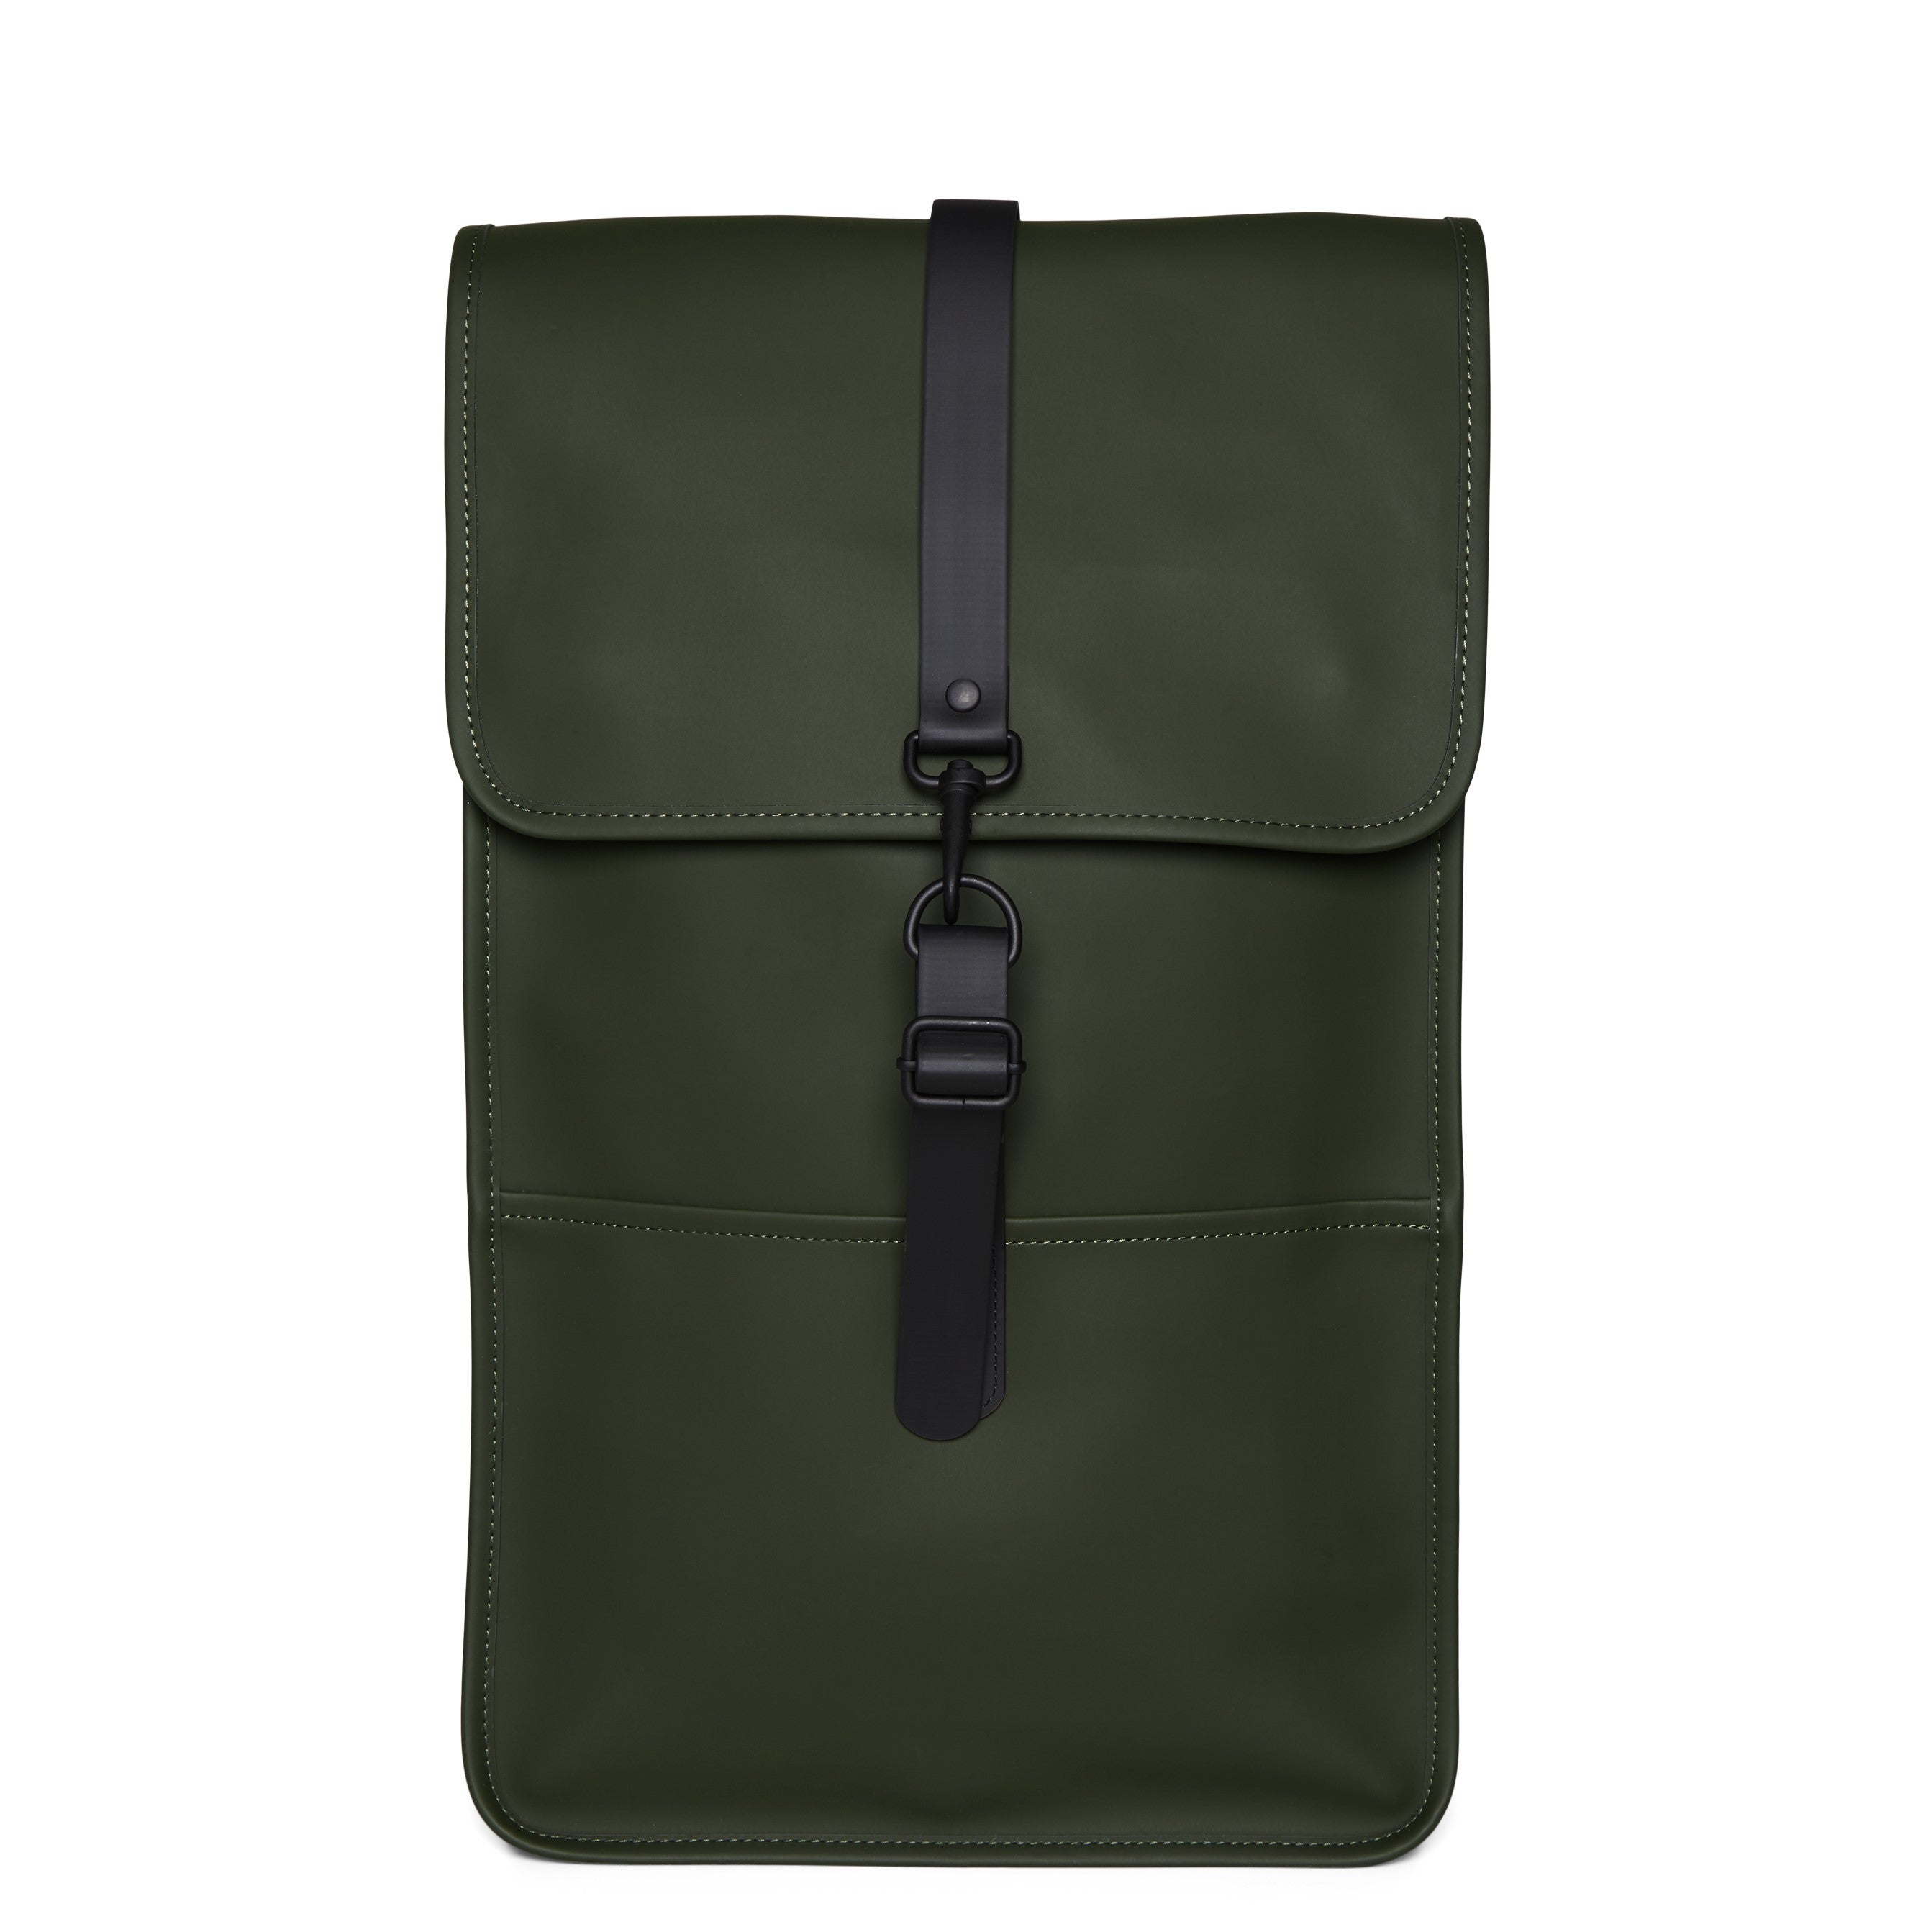 Backpack Green